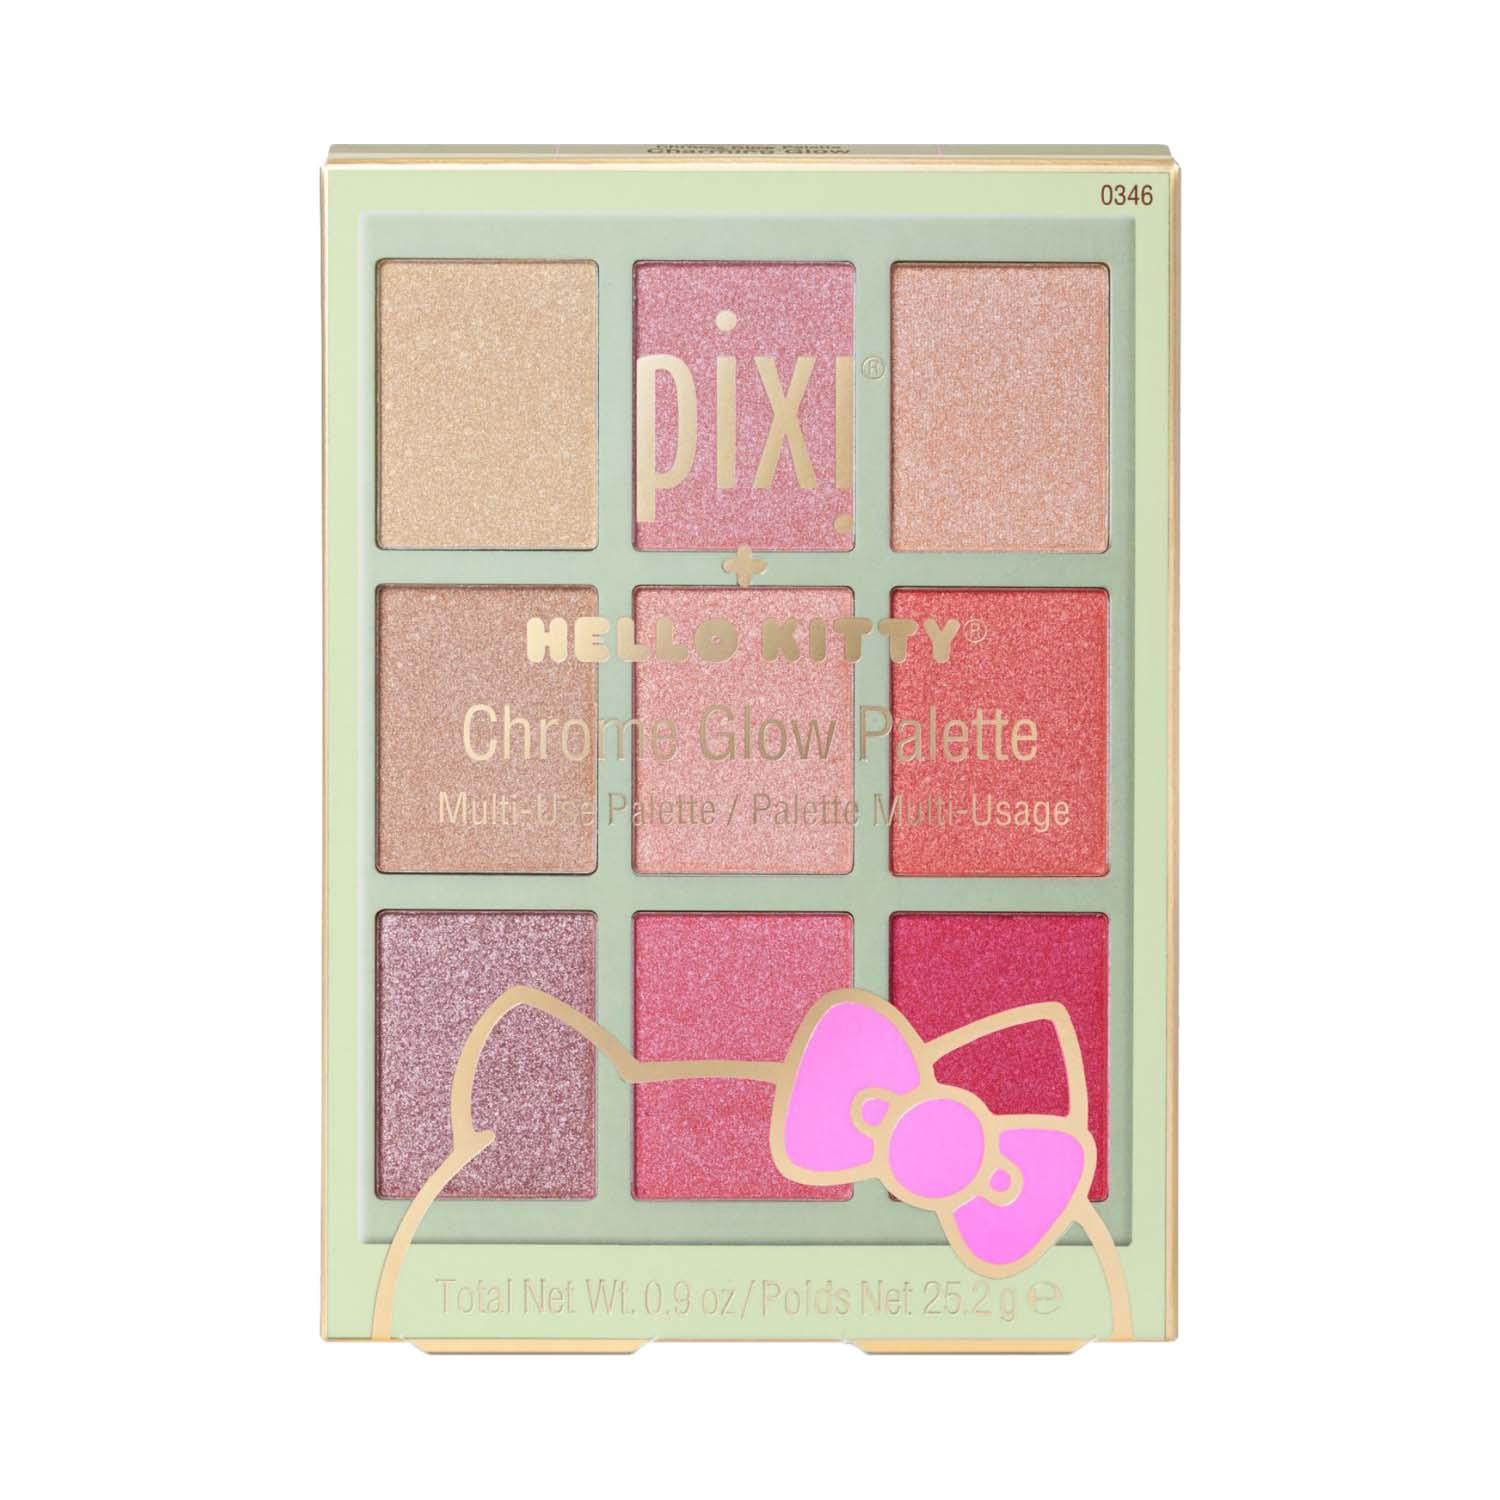 PIXI | PIXI Hello Kitty Chrome Glow Palette - Charming Glow (25.2 g)